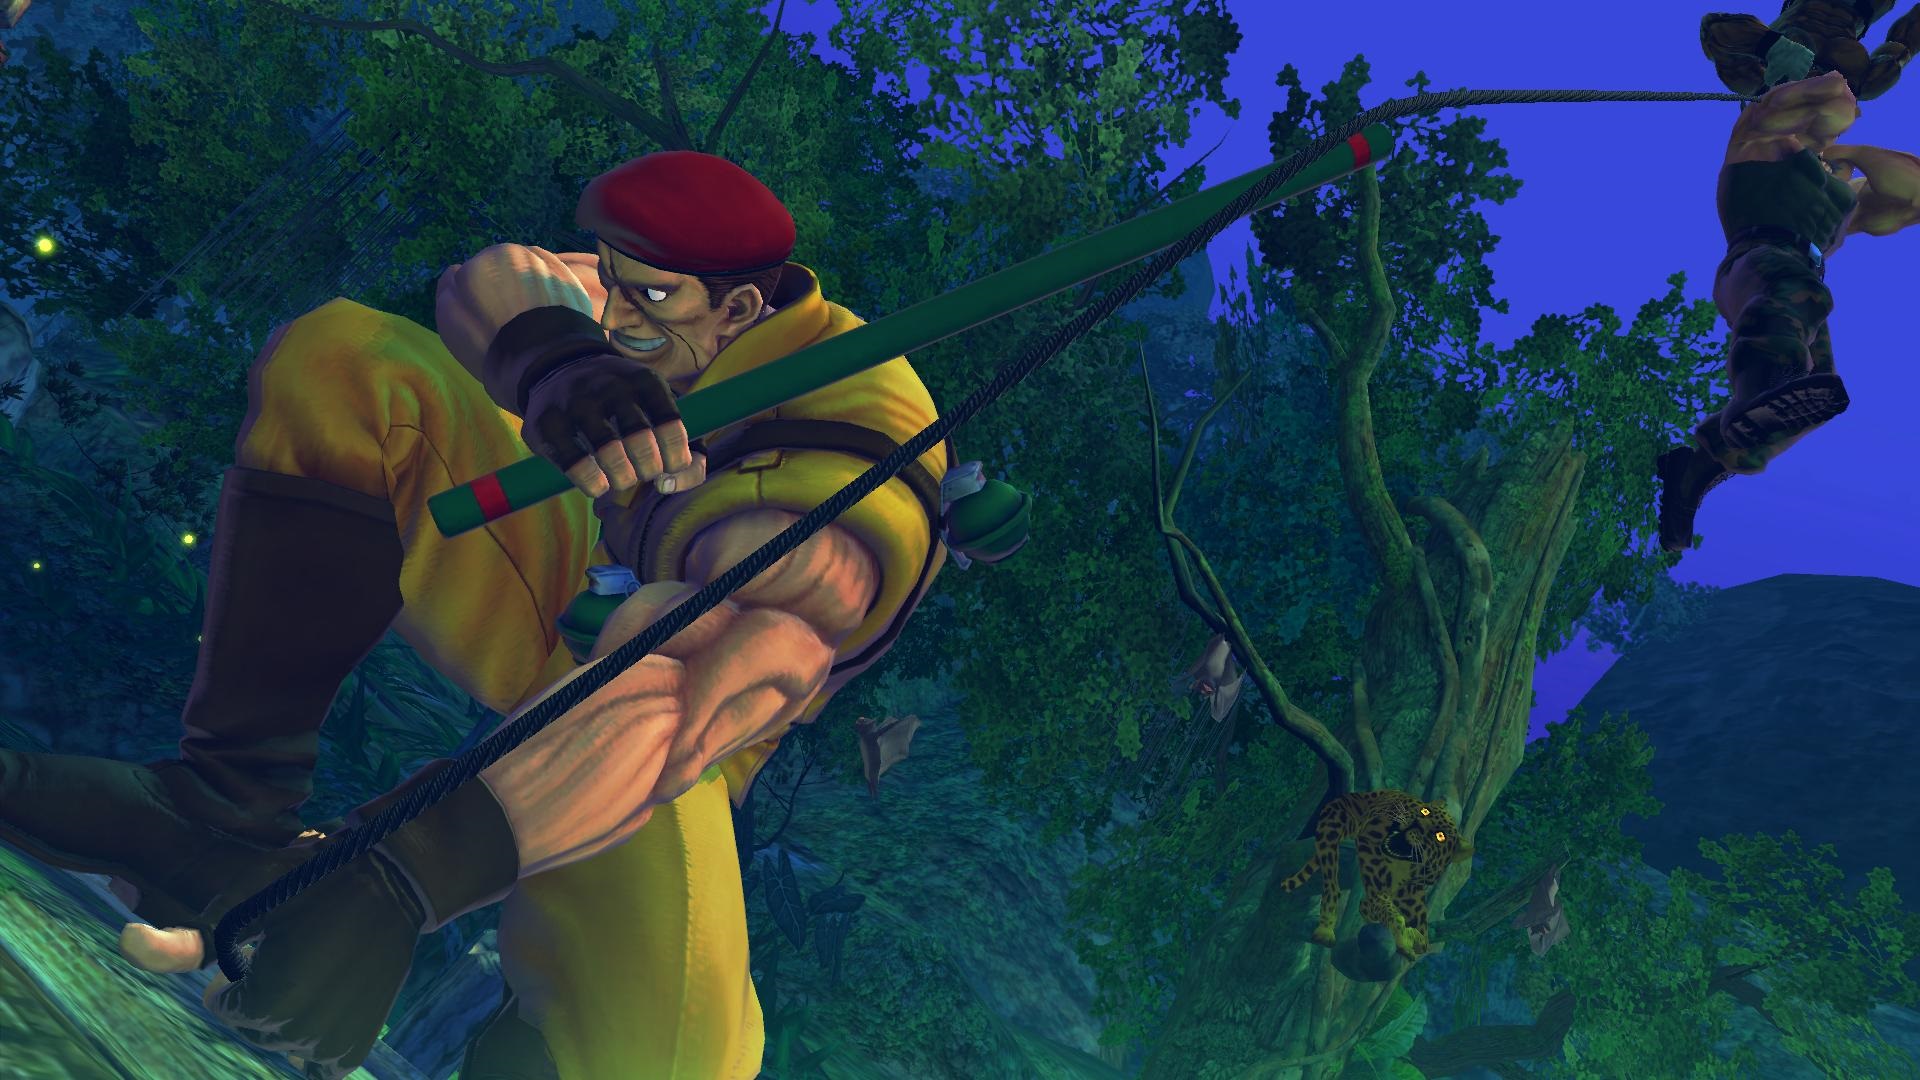 Ultra Street Fighter IV Schugerg patr taktie medzi nov prrastky medzi bojovnkmi.